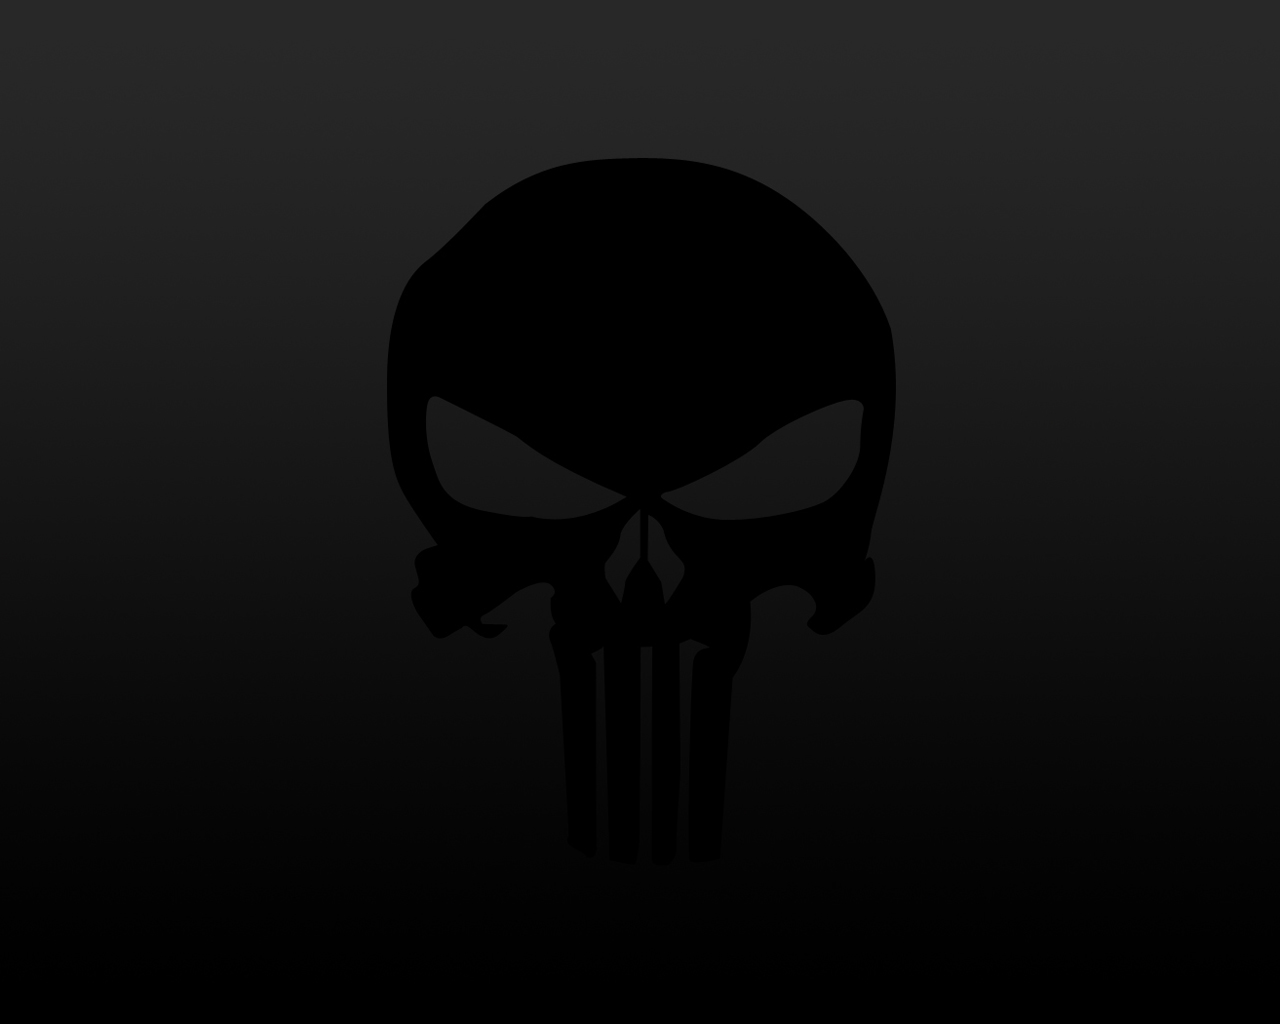  Punisher Skull Wallpaper or download Black Punisher Skull Wallpaper on